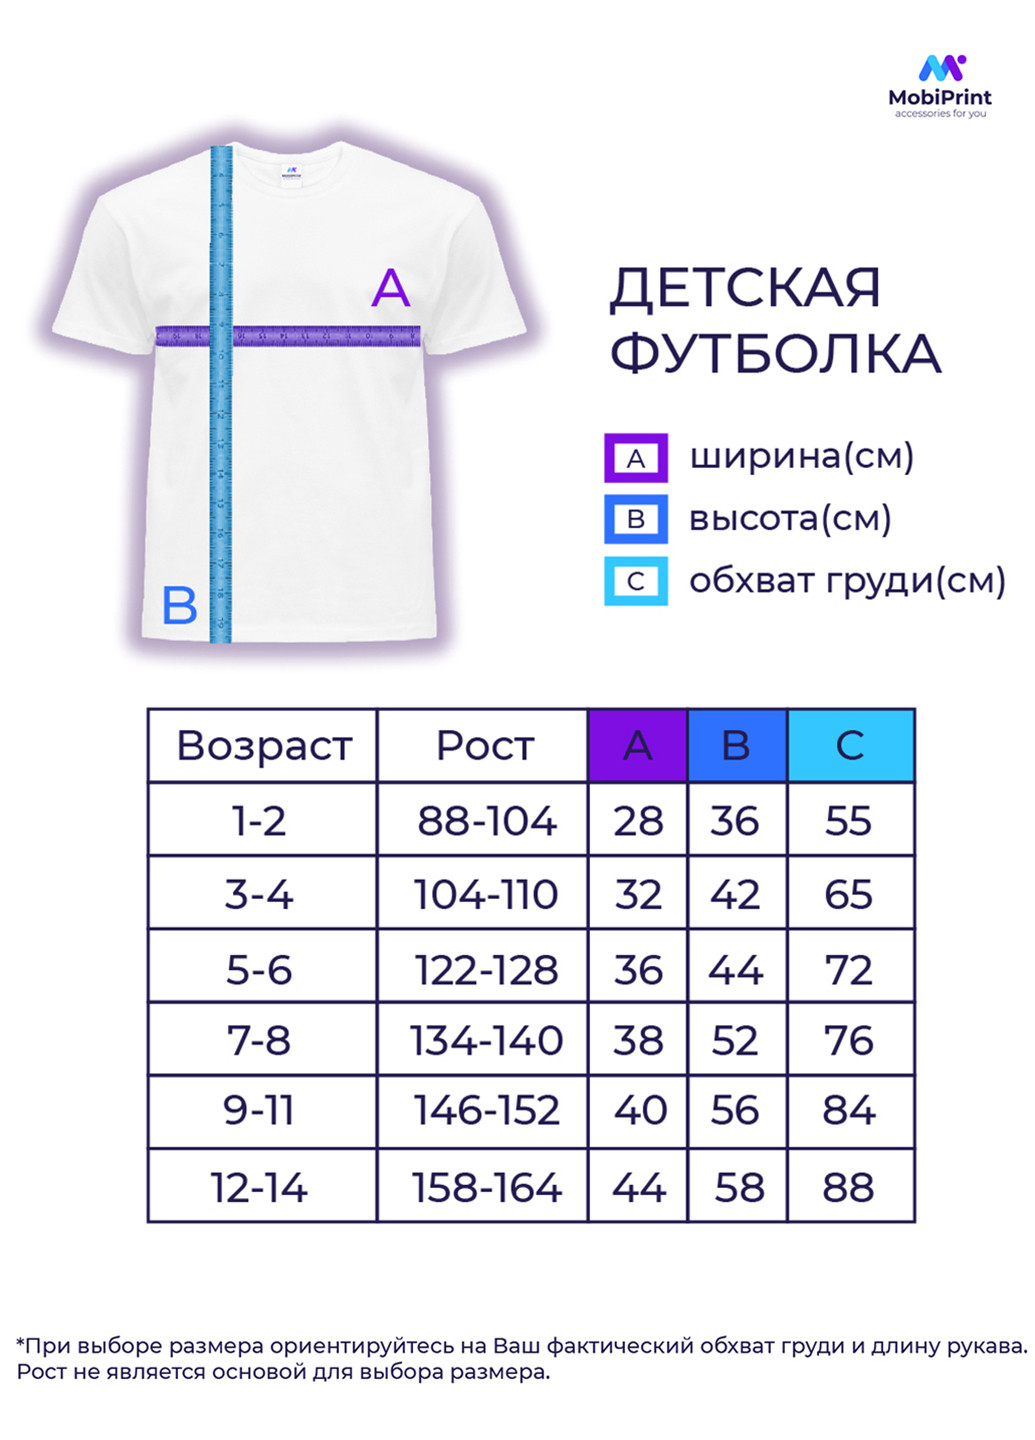 Фиолетовая демисезонная футболка детская пубг пабг (pubg)(9224-1185) MobiPrint